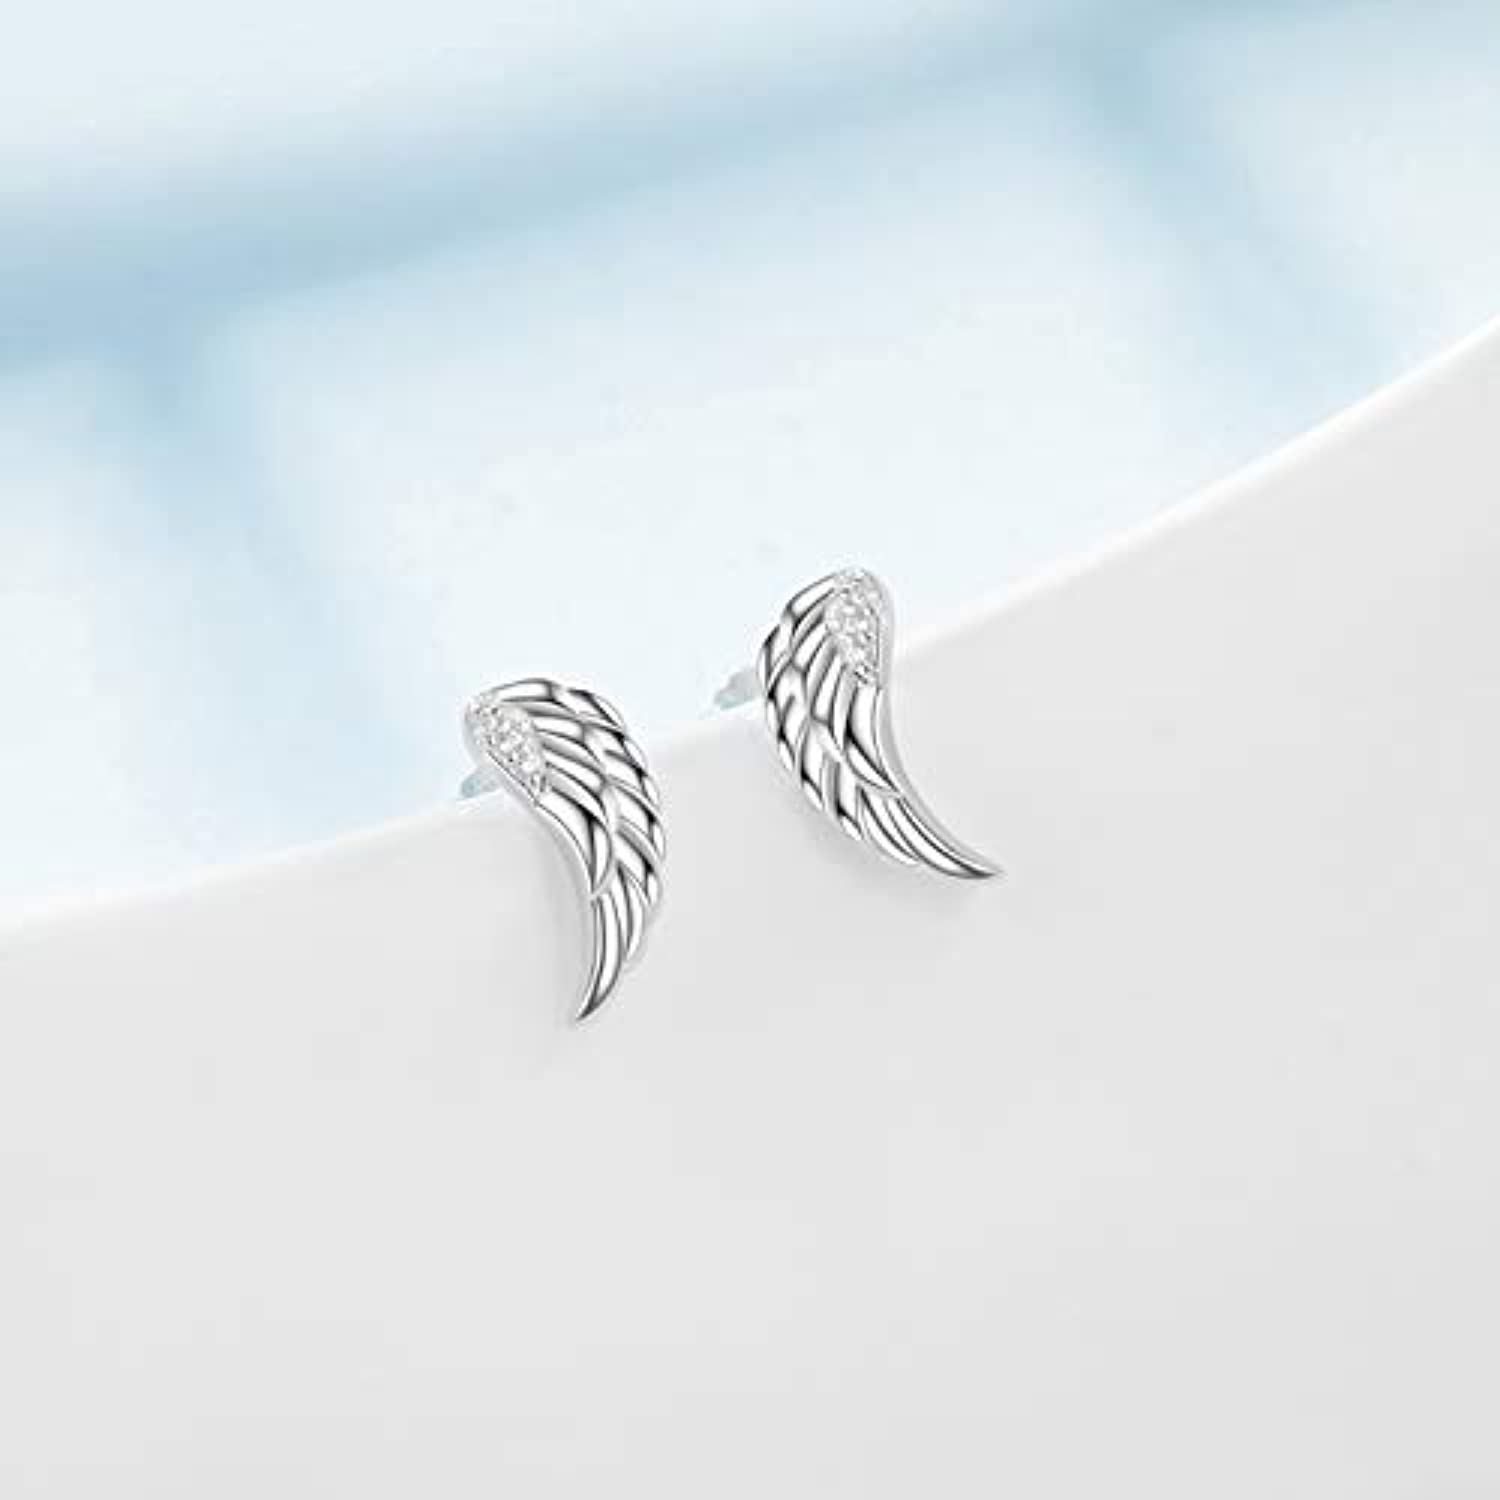 Angel Wings stud Earrings Sterling Silver CZ Hollow Out Filigree Angel Wings Earrings for Women Girls